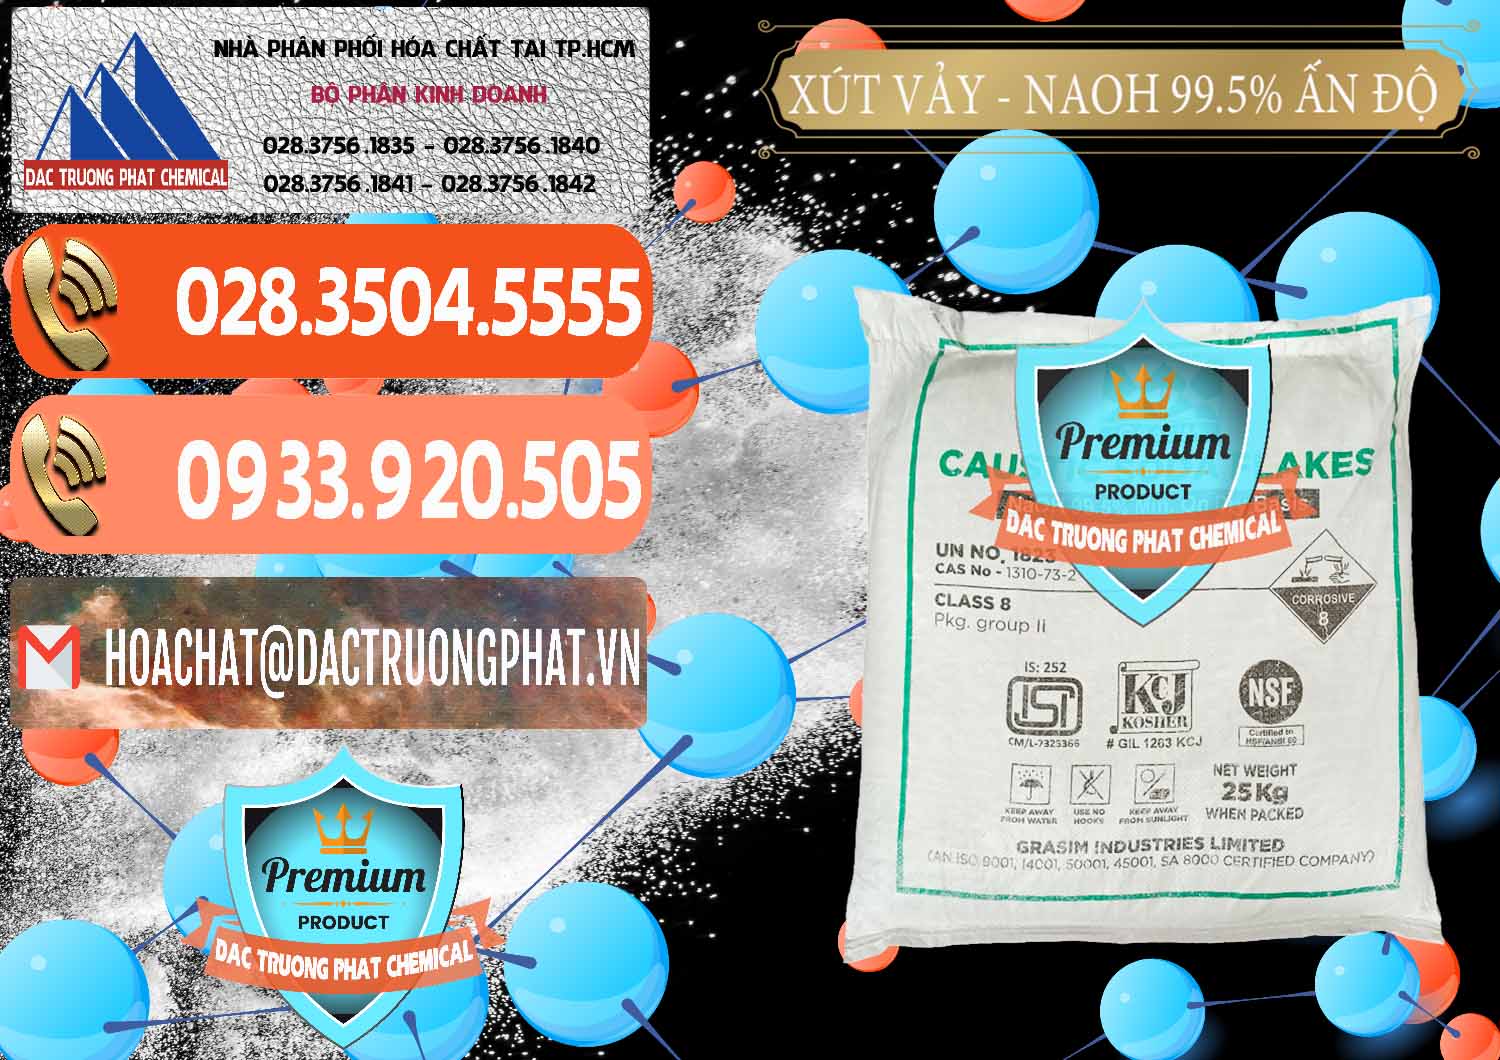 Cty chuyên bán ( cung cấp ) Xút Vảy - NaOH Vảy 99.5% Aditya Birla Grasim Ấn Độ India - 0170 - Nơi chuyên kinh doanh - cung cấp hóa chất tại TP.HCM - hoachatmientay.com